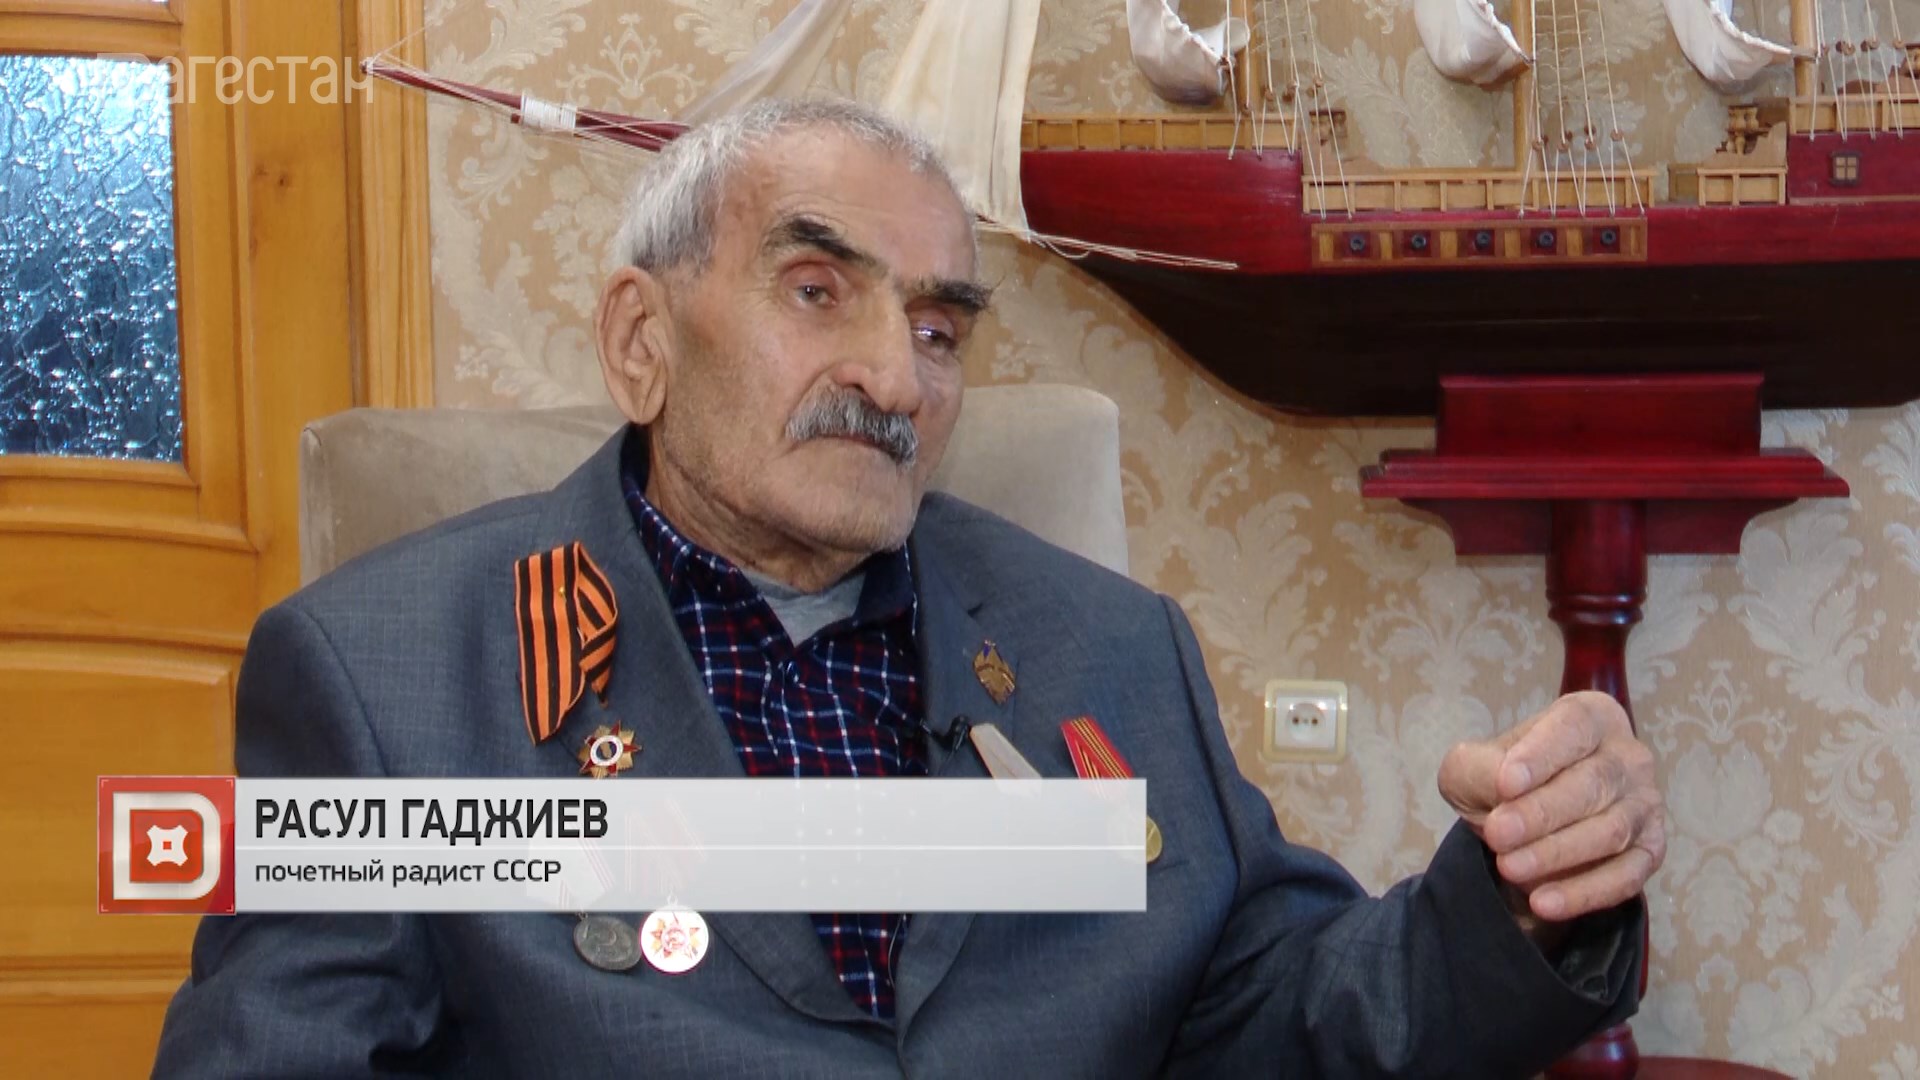 Расул Гаджиев - один из лучших связистов Дагестана